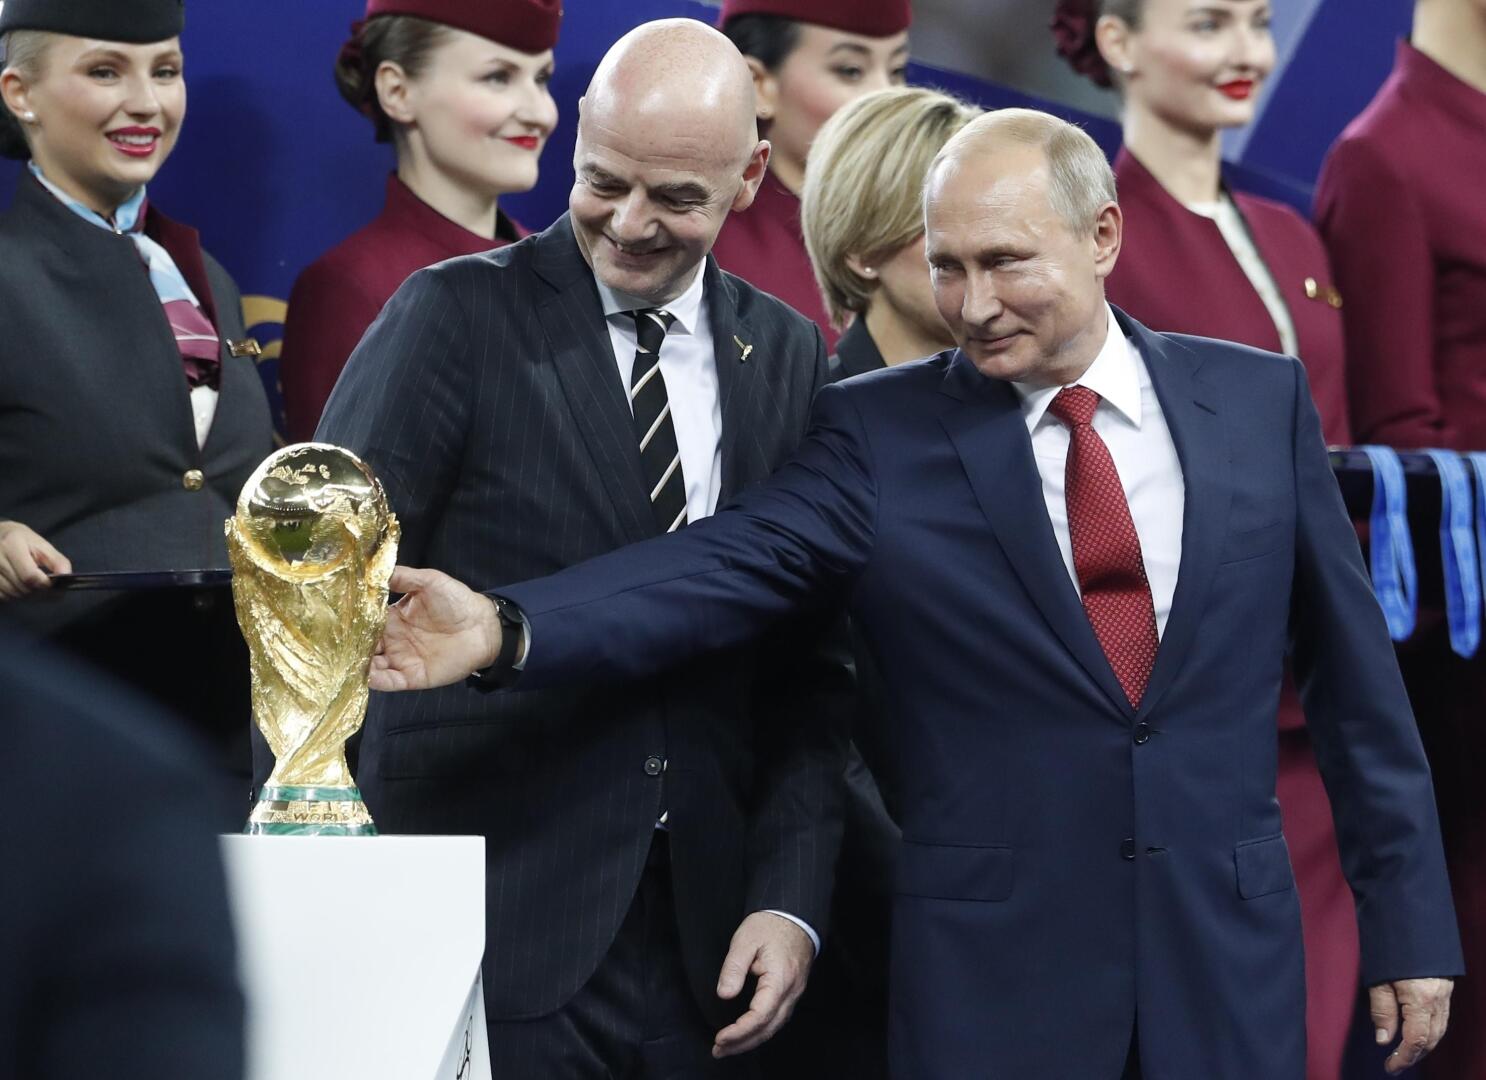 Moscow  Fifa world cup, Fifa world cups, World cup 2018